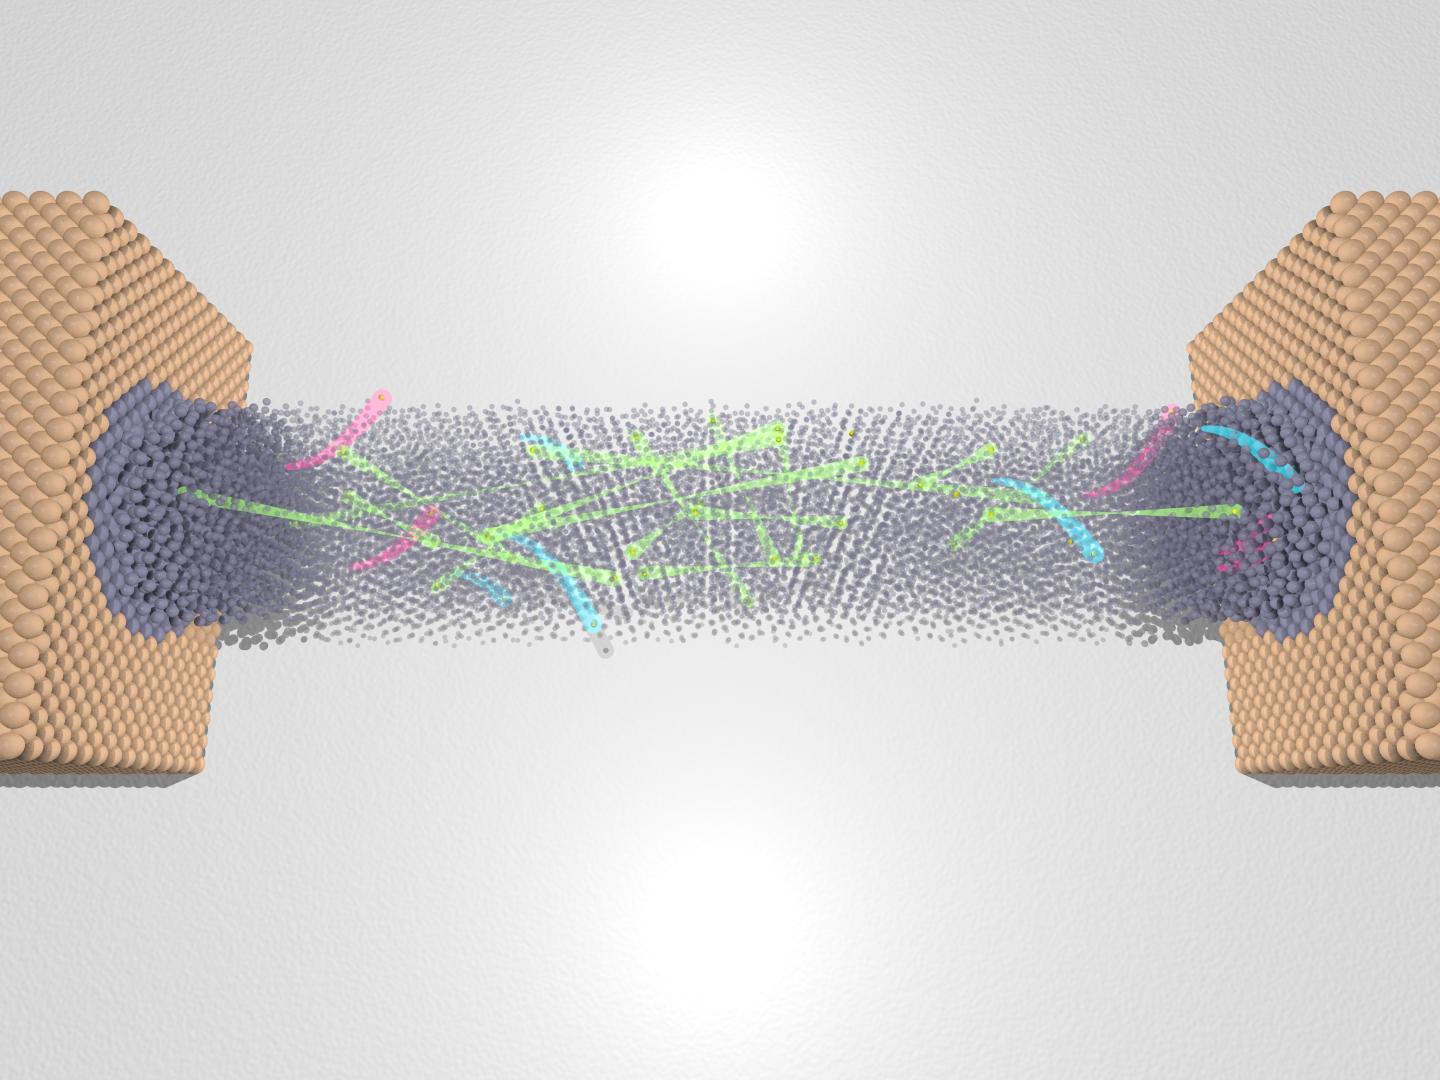 Pair-Breaking in Nanowires